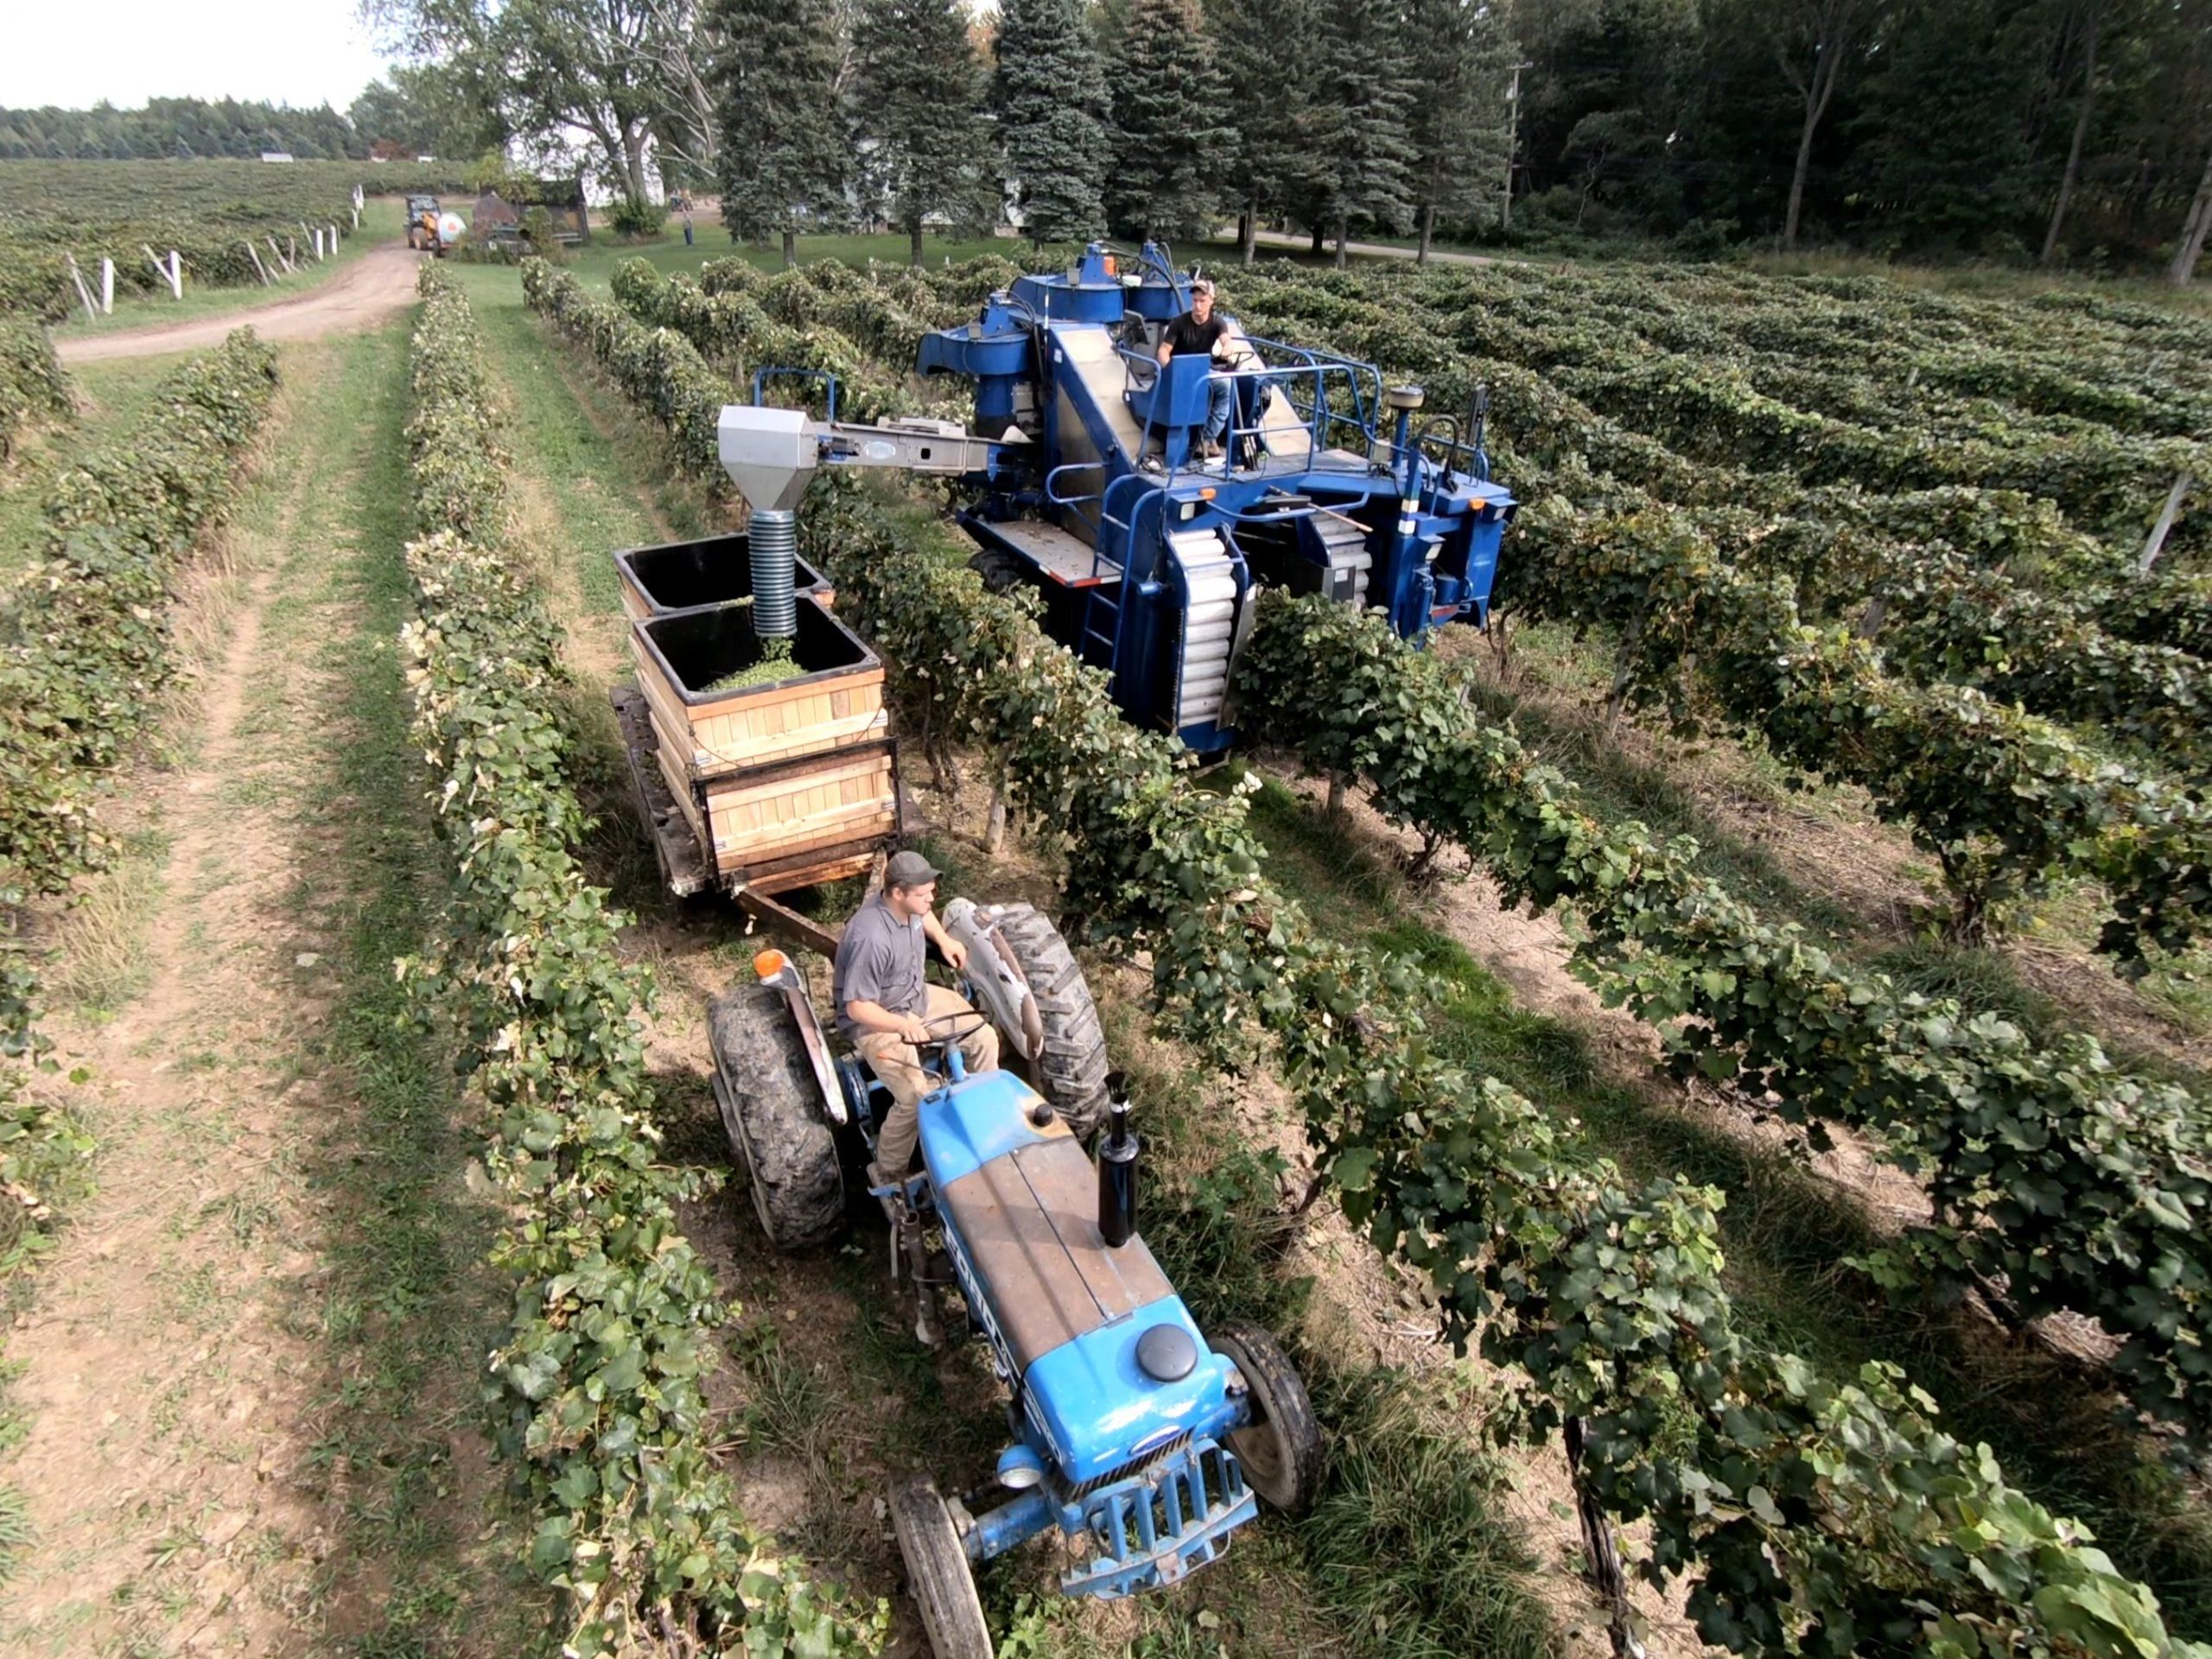 Harvesting grapes at Stefon Hay farms